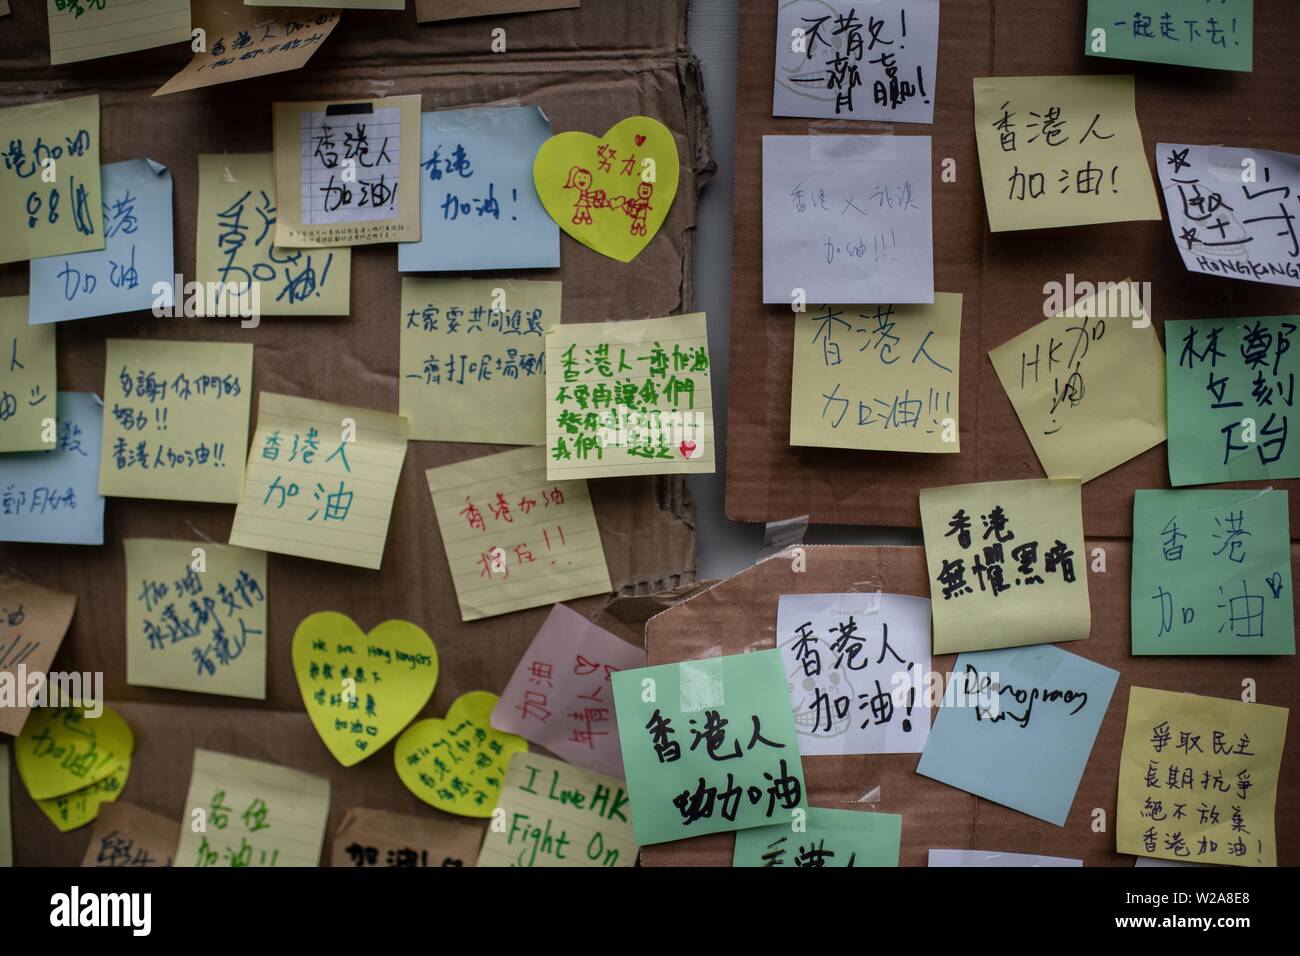 Las pegatinas con mensajes diferentes a los manifestantes colgados de la pared en frente de la estación de tren West Kowloon durante la protesta en contra de la ley de extradición a China. Foto de stock